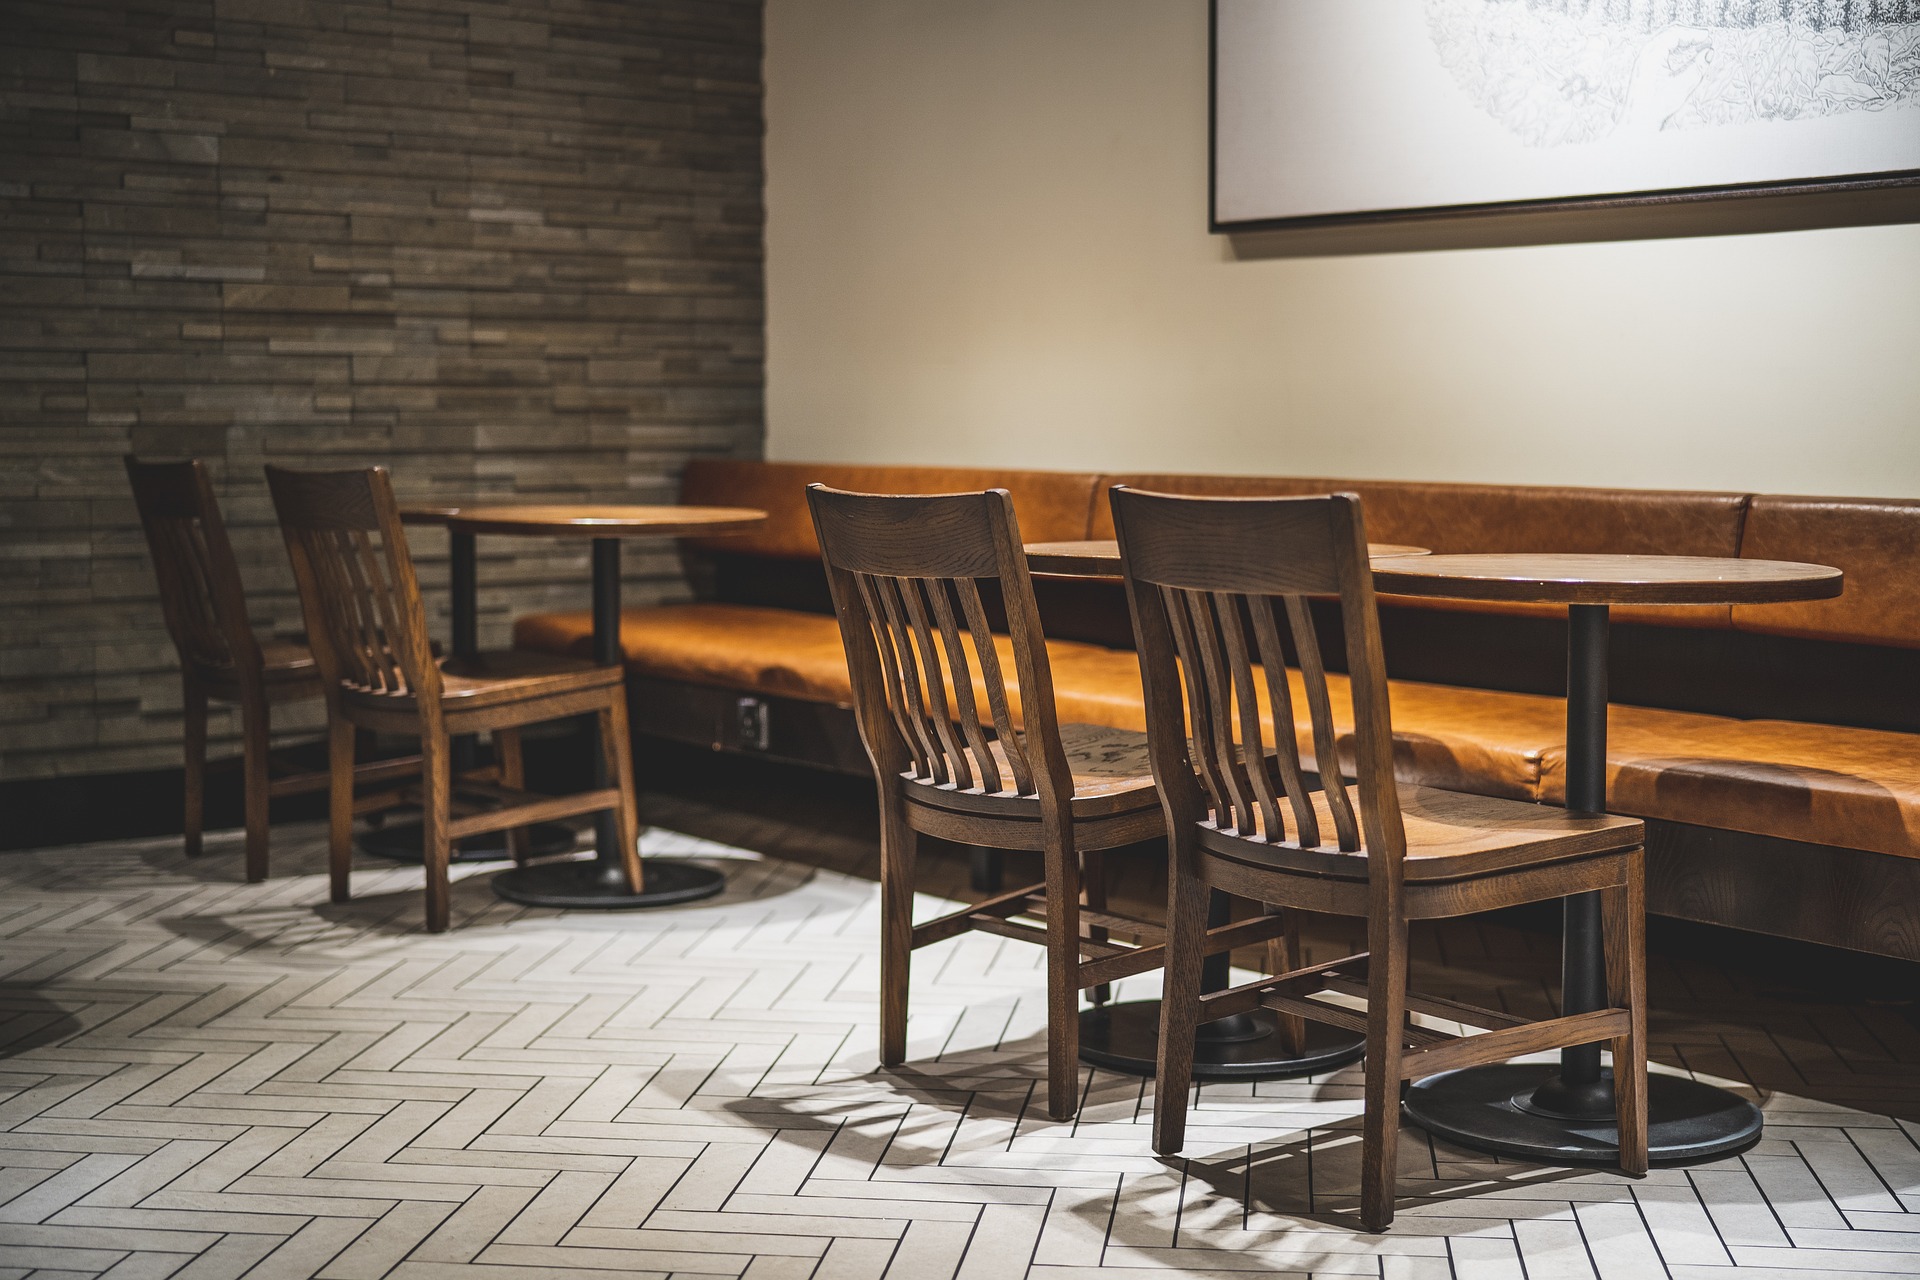 Wygodne i stylowe krzesła drewniane — wyznacznik elegancki i solidności